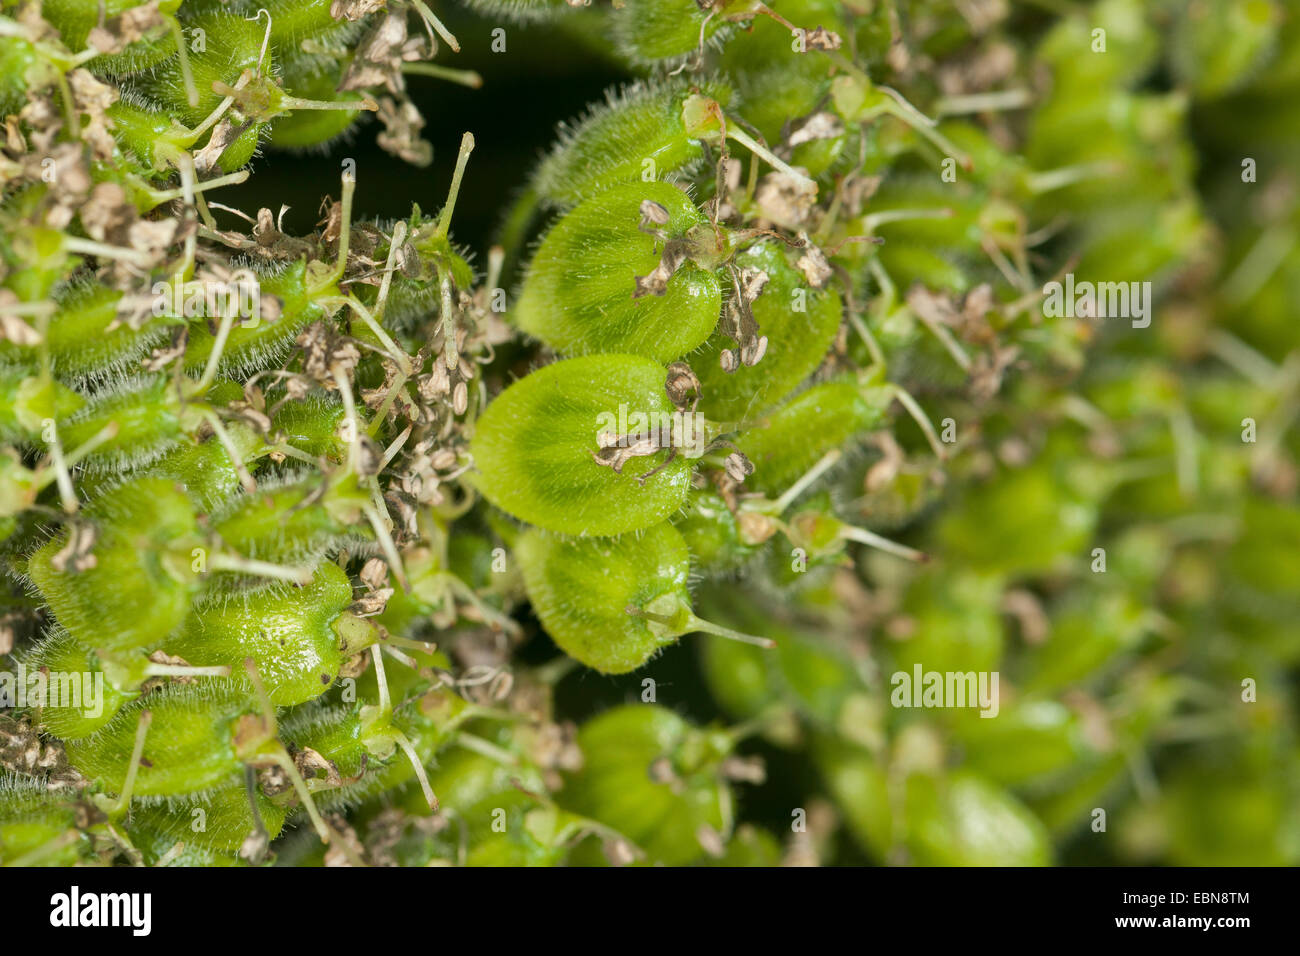 Giant hogweed (Heracleum mantegazzianum), young fruits, Germany Stock Photo